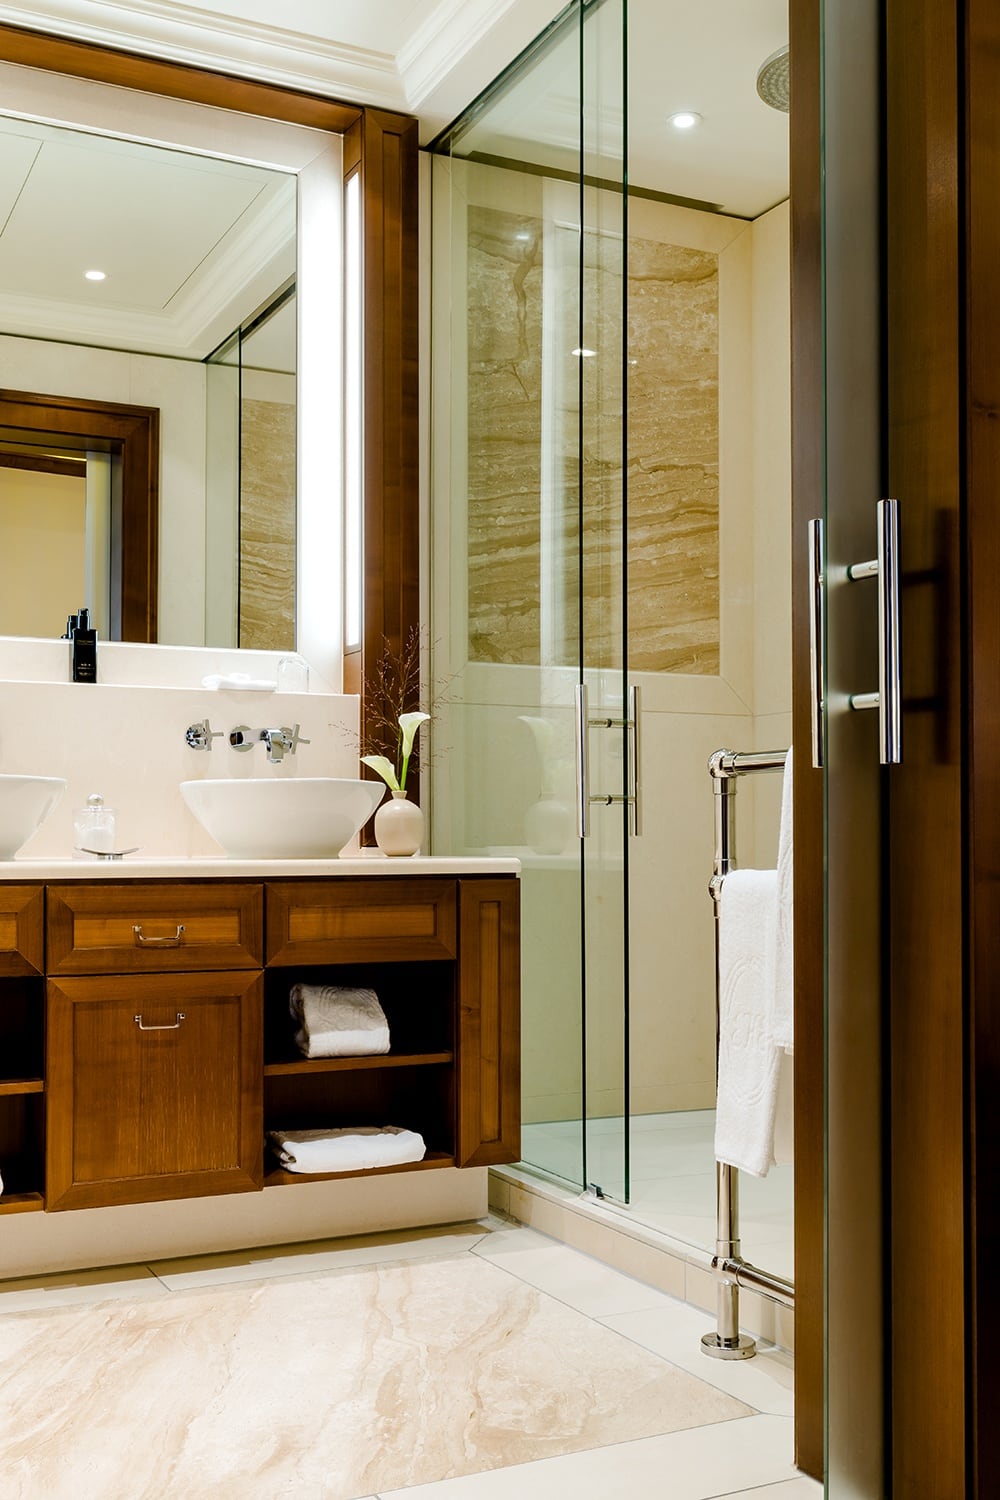 Blick in ein Badezimmer mit Glasdusche und zwei Waschbecken vor einem großen Spiegel